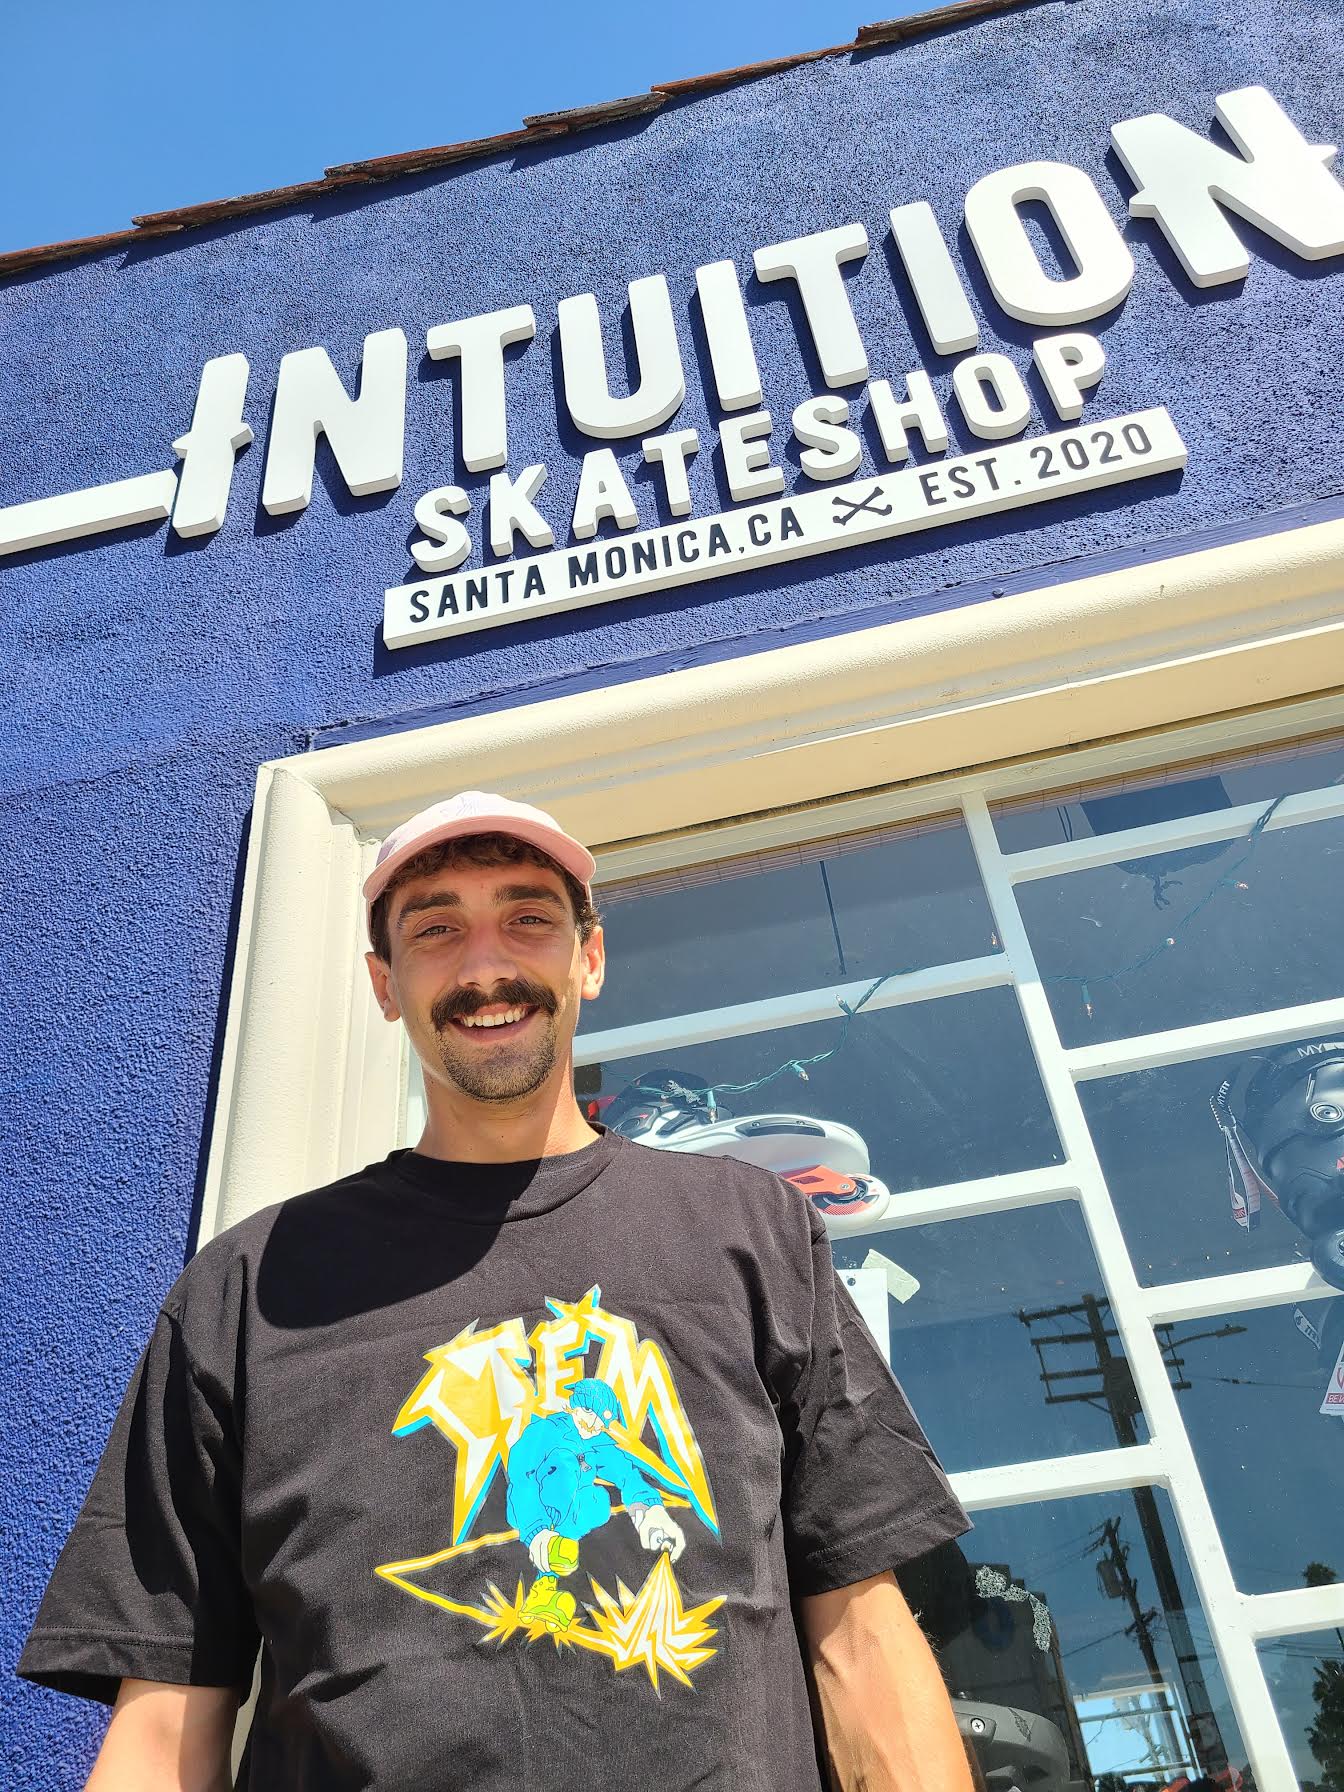 Rollerblades Santa Monica, Roller Skates Santa Monica, Intuition Skate Shop Santa Monica